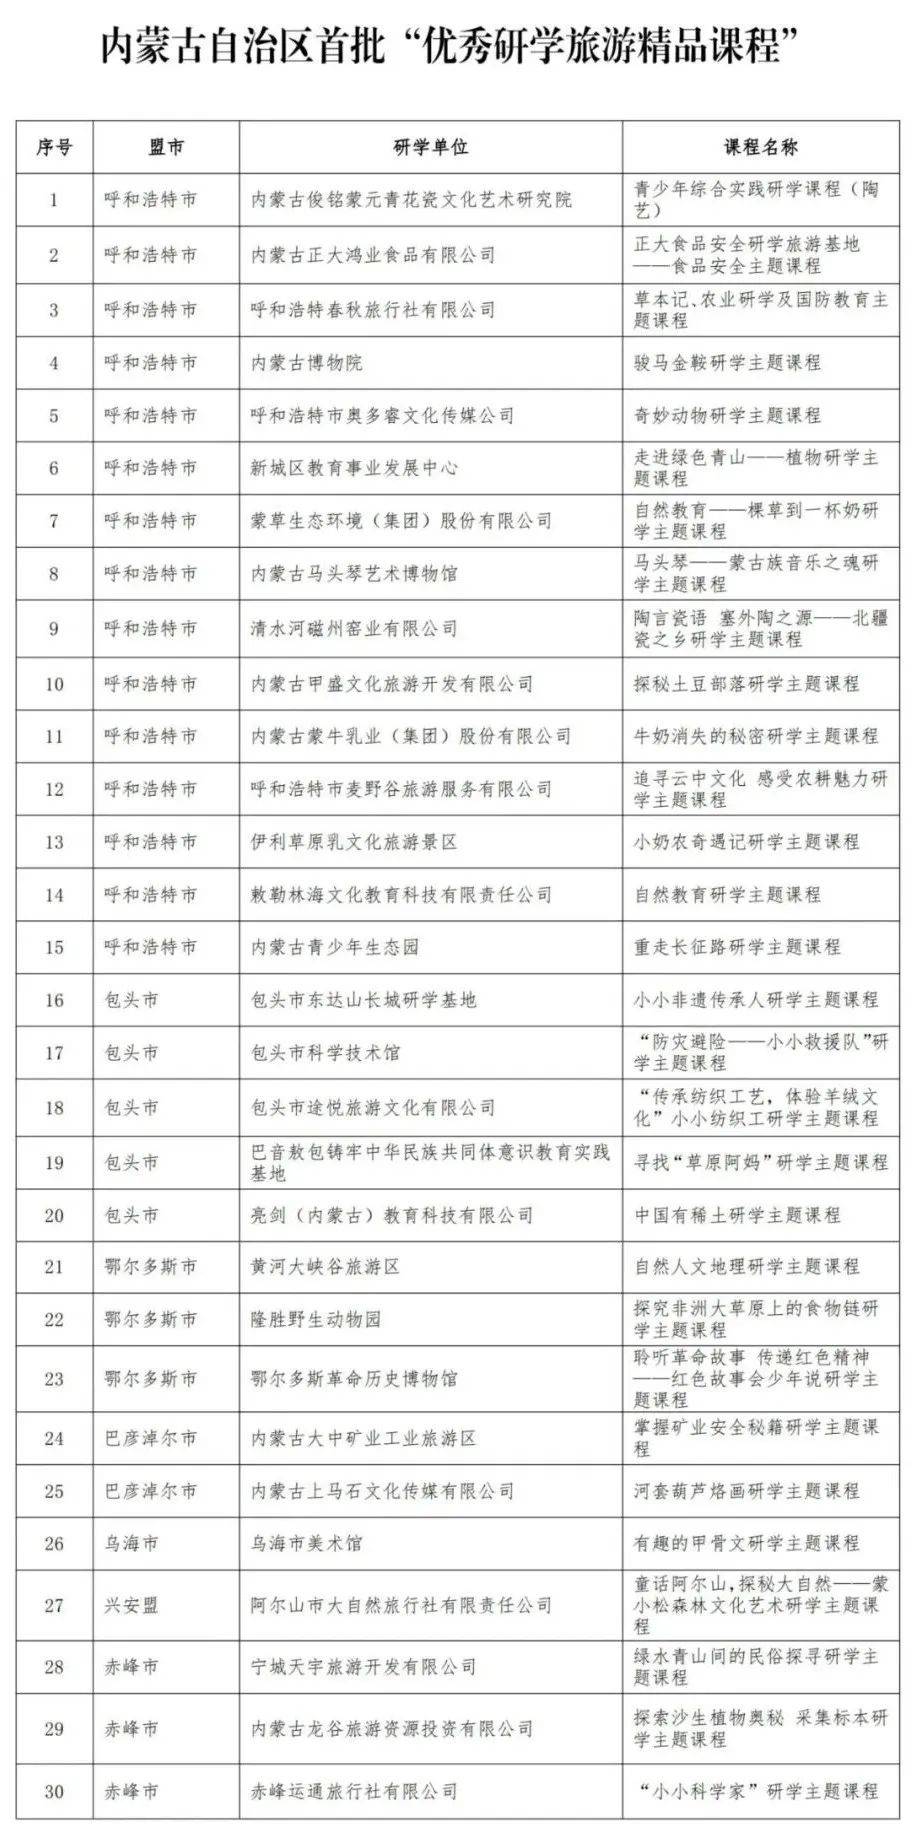 凉城县县委书记名单图片